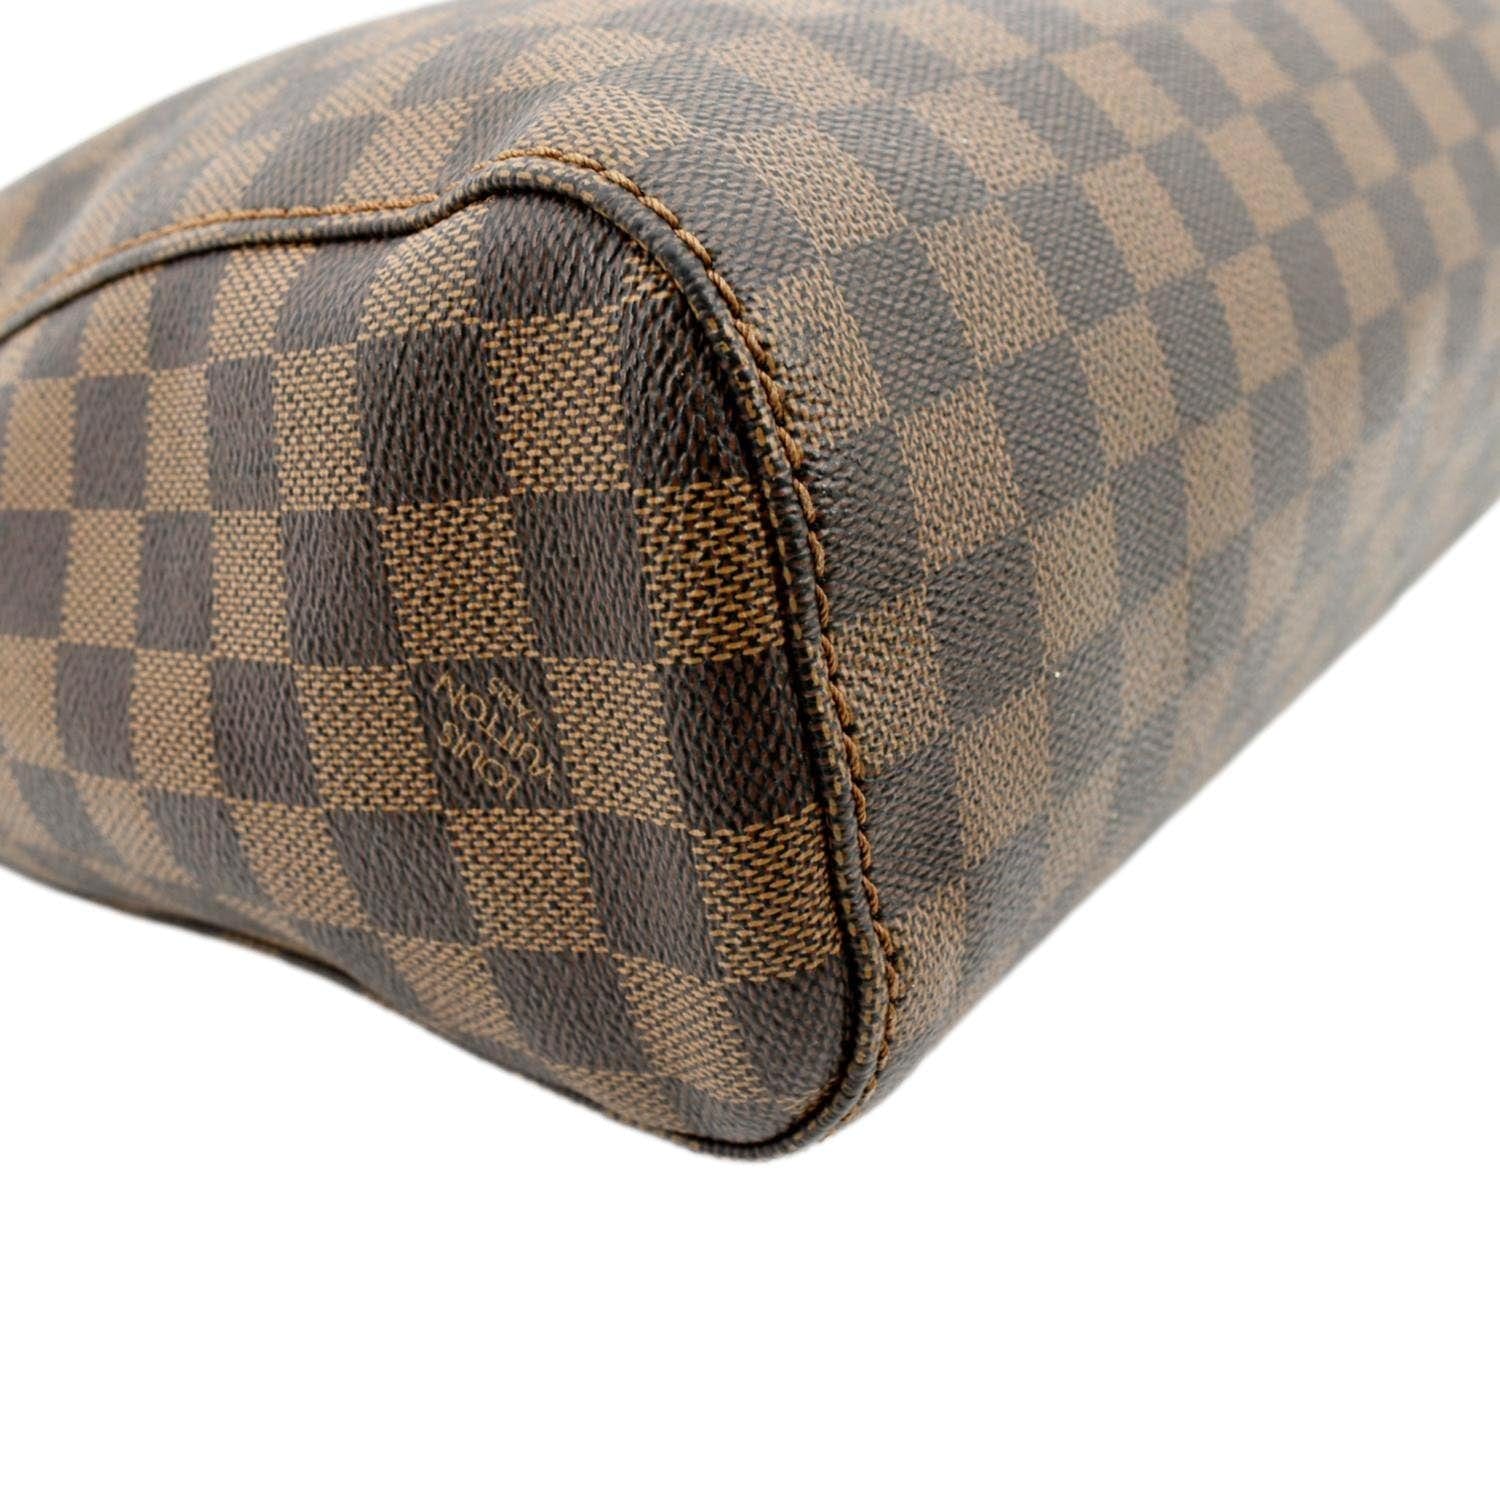 Louis Vuitton Damier Ebene Portobello PM - Brown Hobos, Handbags -  LOU743664